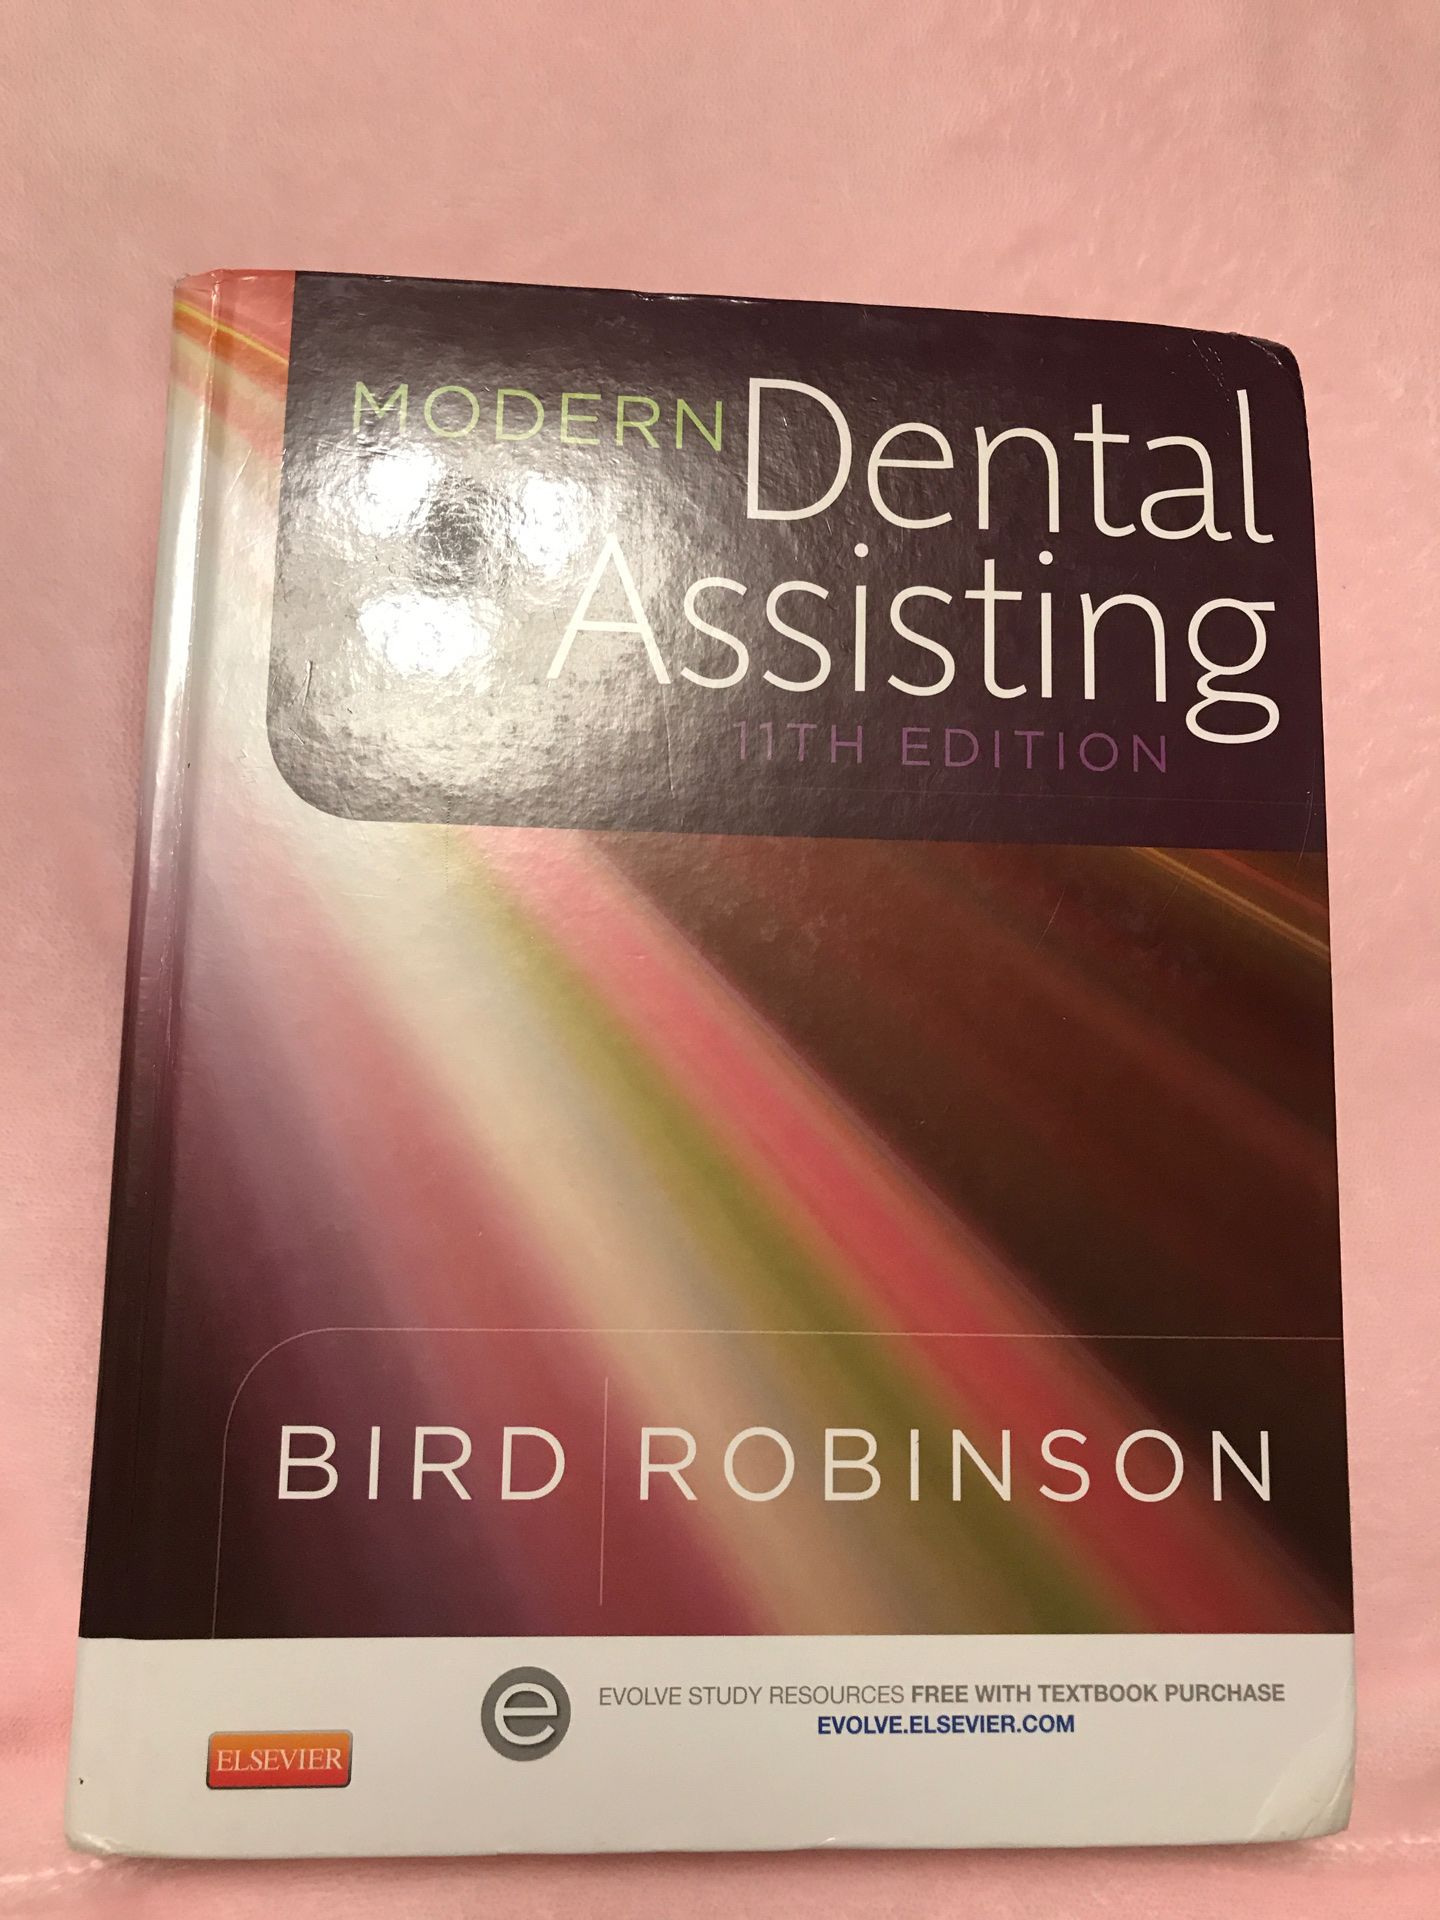 Dental assisting book